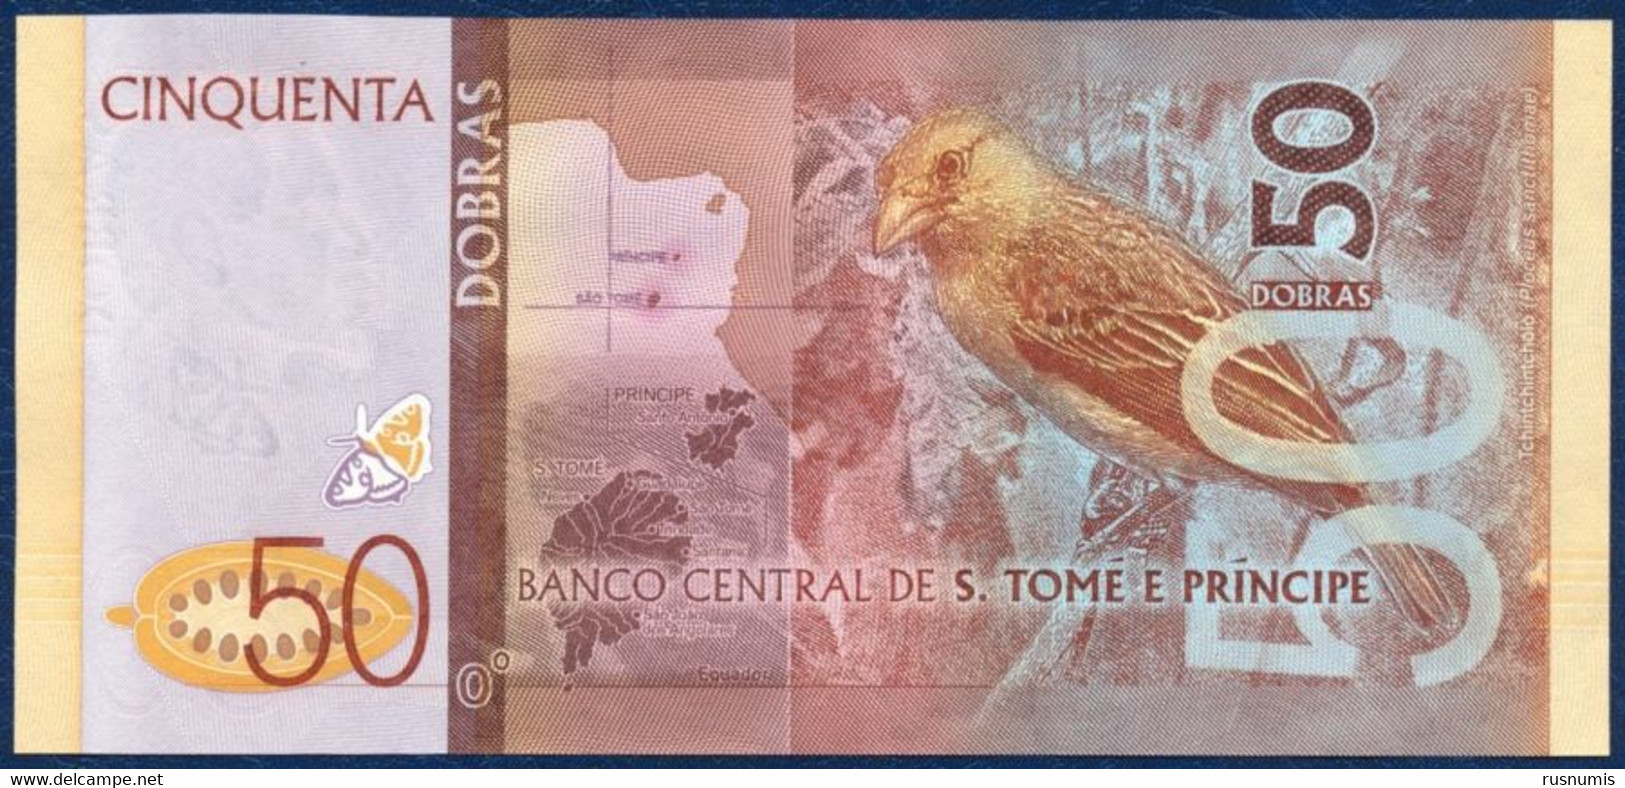 SAN TOME - SAO TOME AND PRINCIPE - ST. THOMAS 50 DOBRAS PICK-73 BUTTERFLY BIRD 2016 UNC - São Tomé U. Príncipe